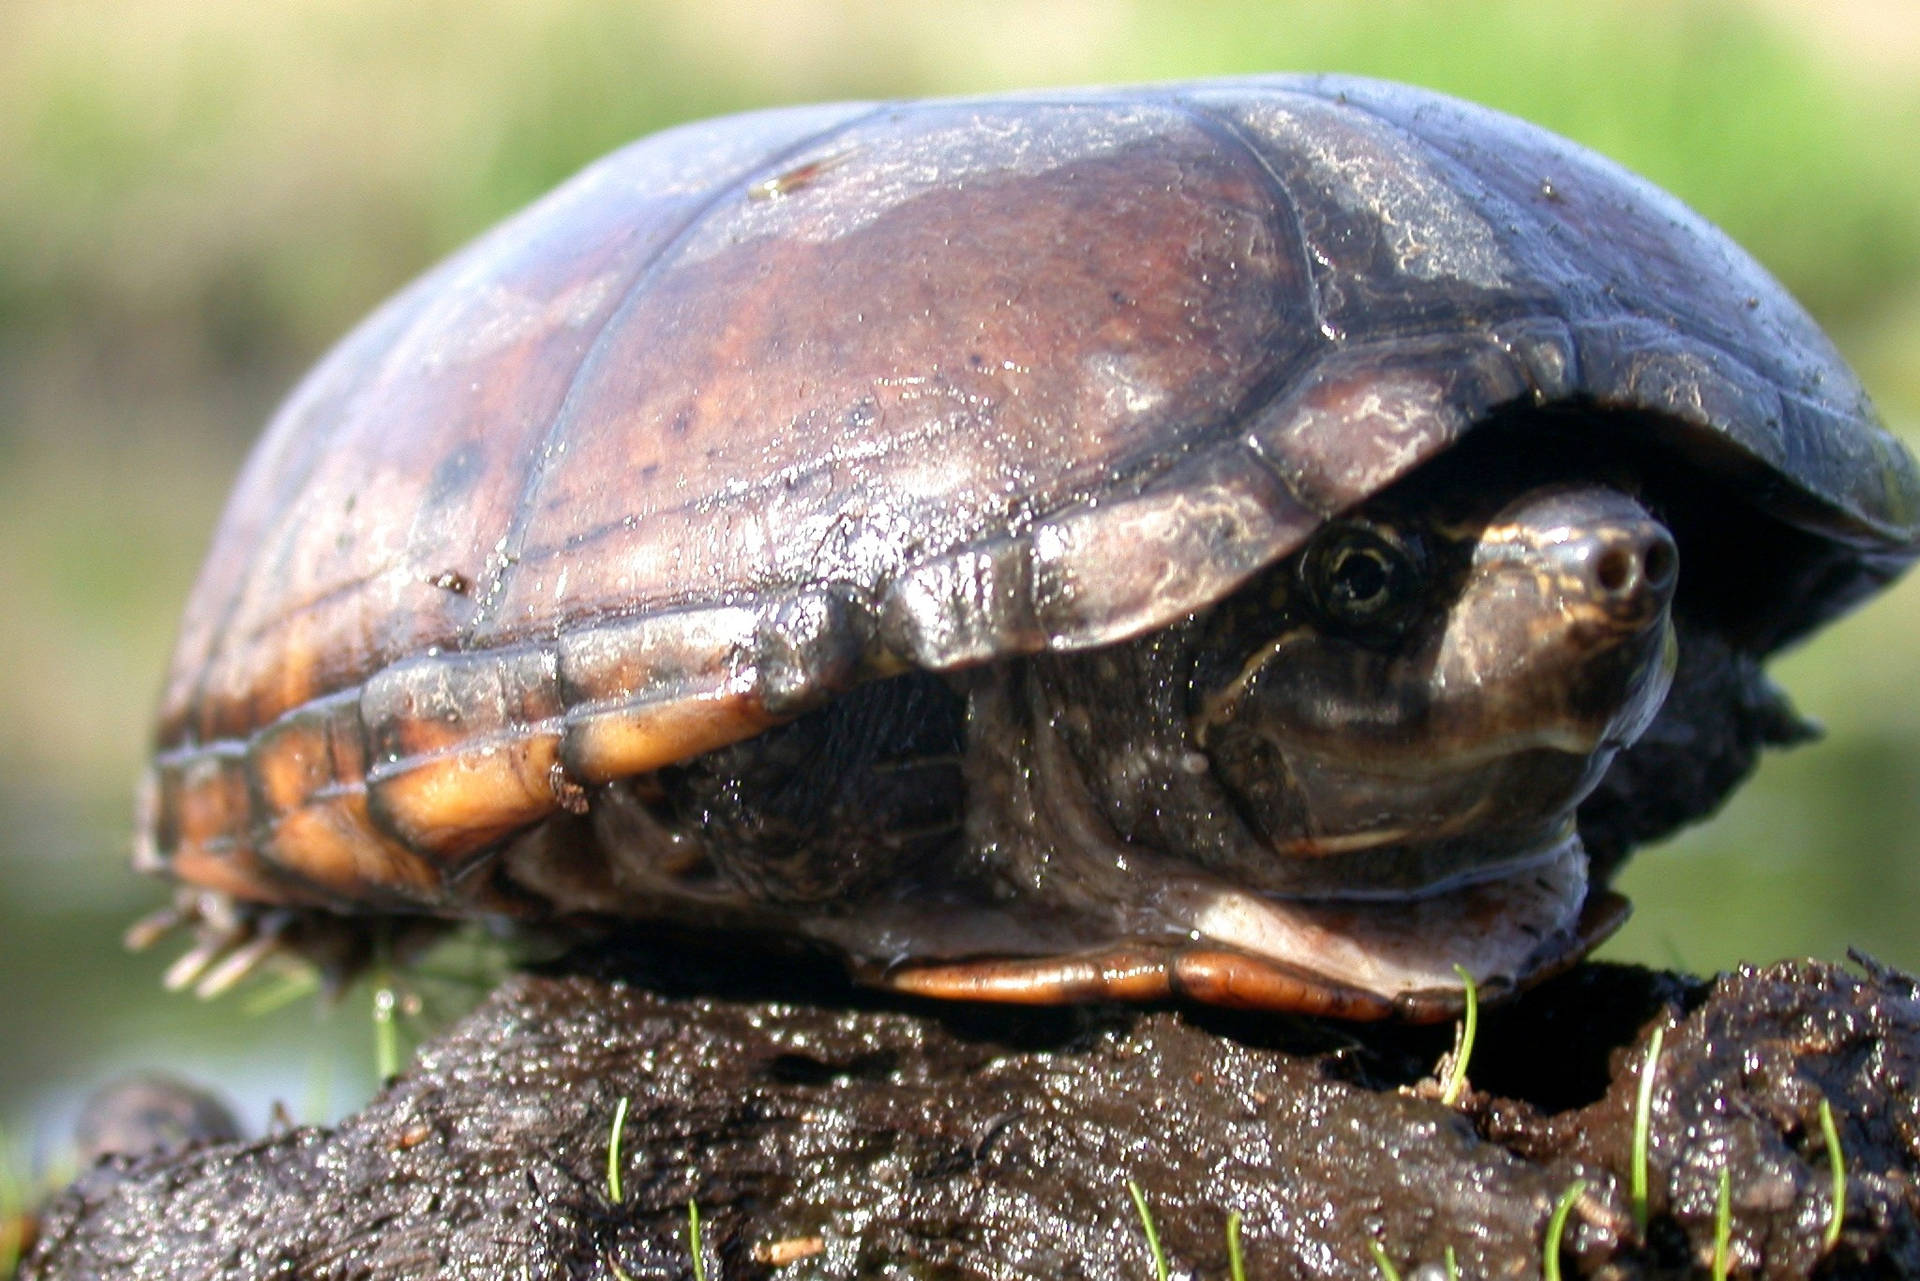 Matschigeschildkröte, Die Sich In Ihrer Schale Versteckt Wallpaper